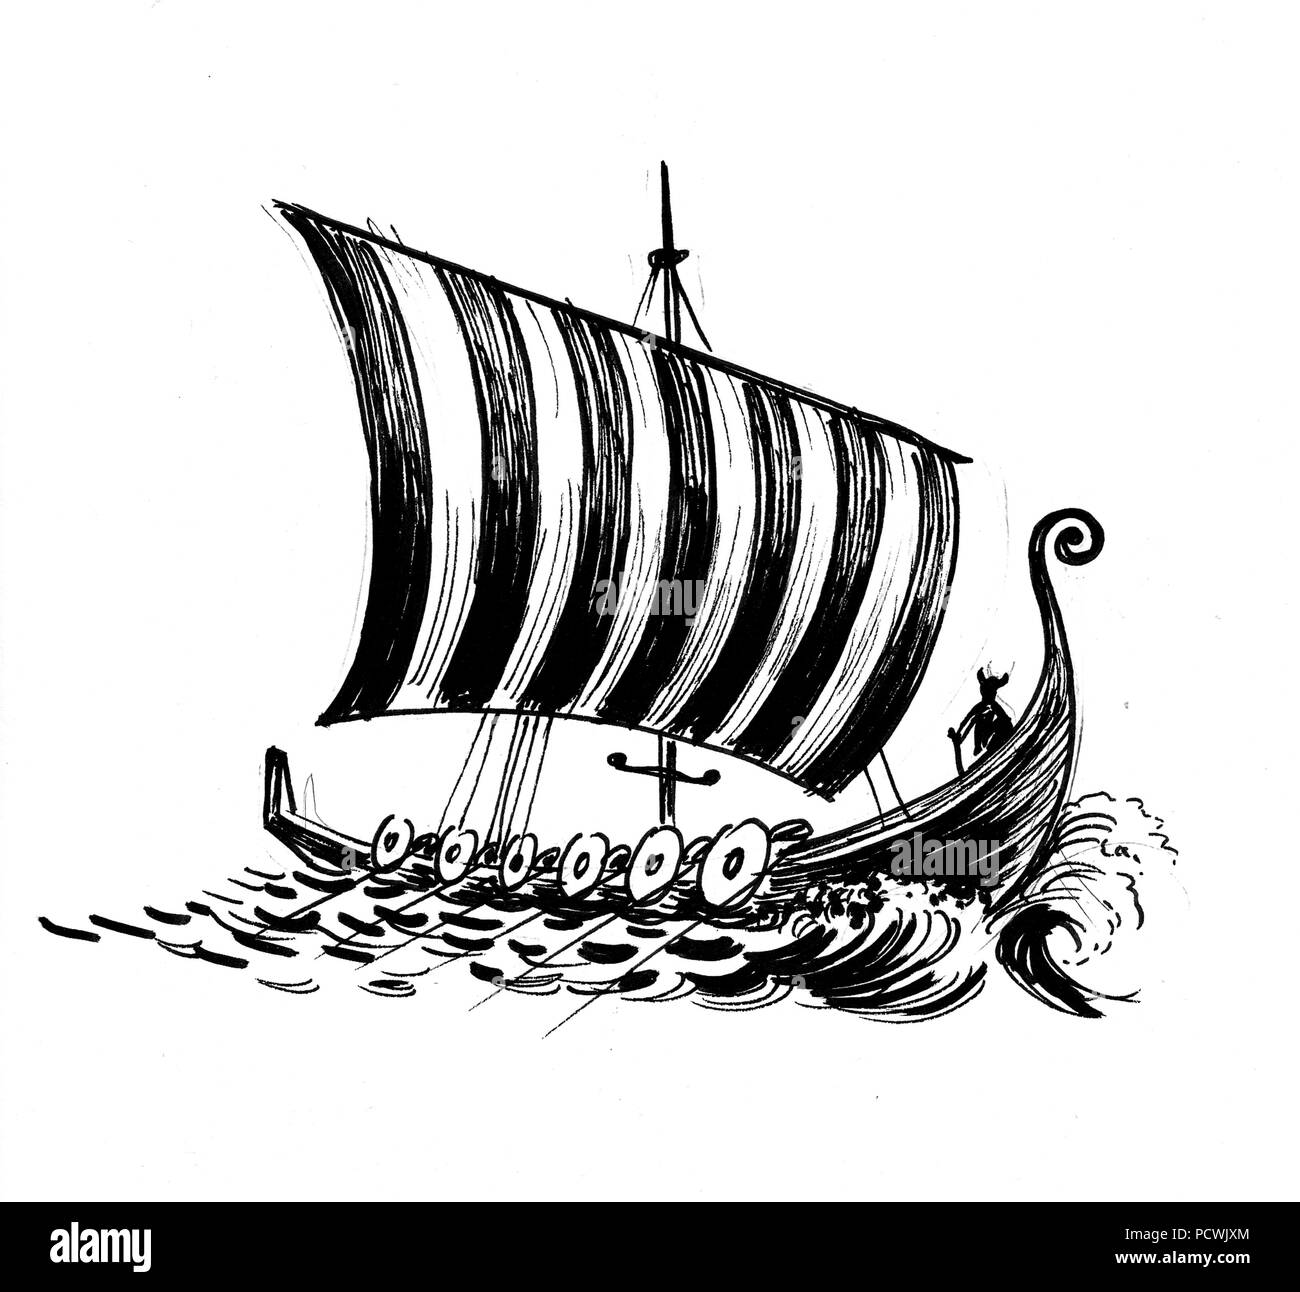 Antica nave vichinga in mare. L'inchiostro bianco e nero disegno Foto Stock